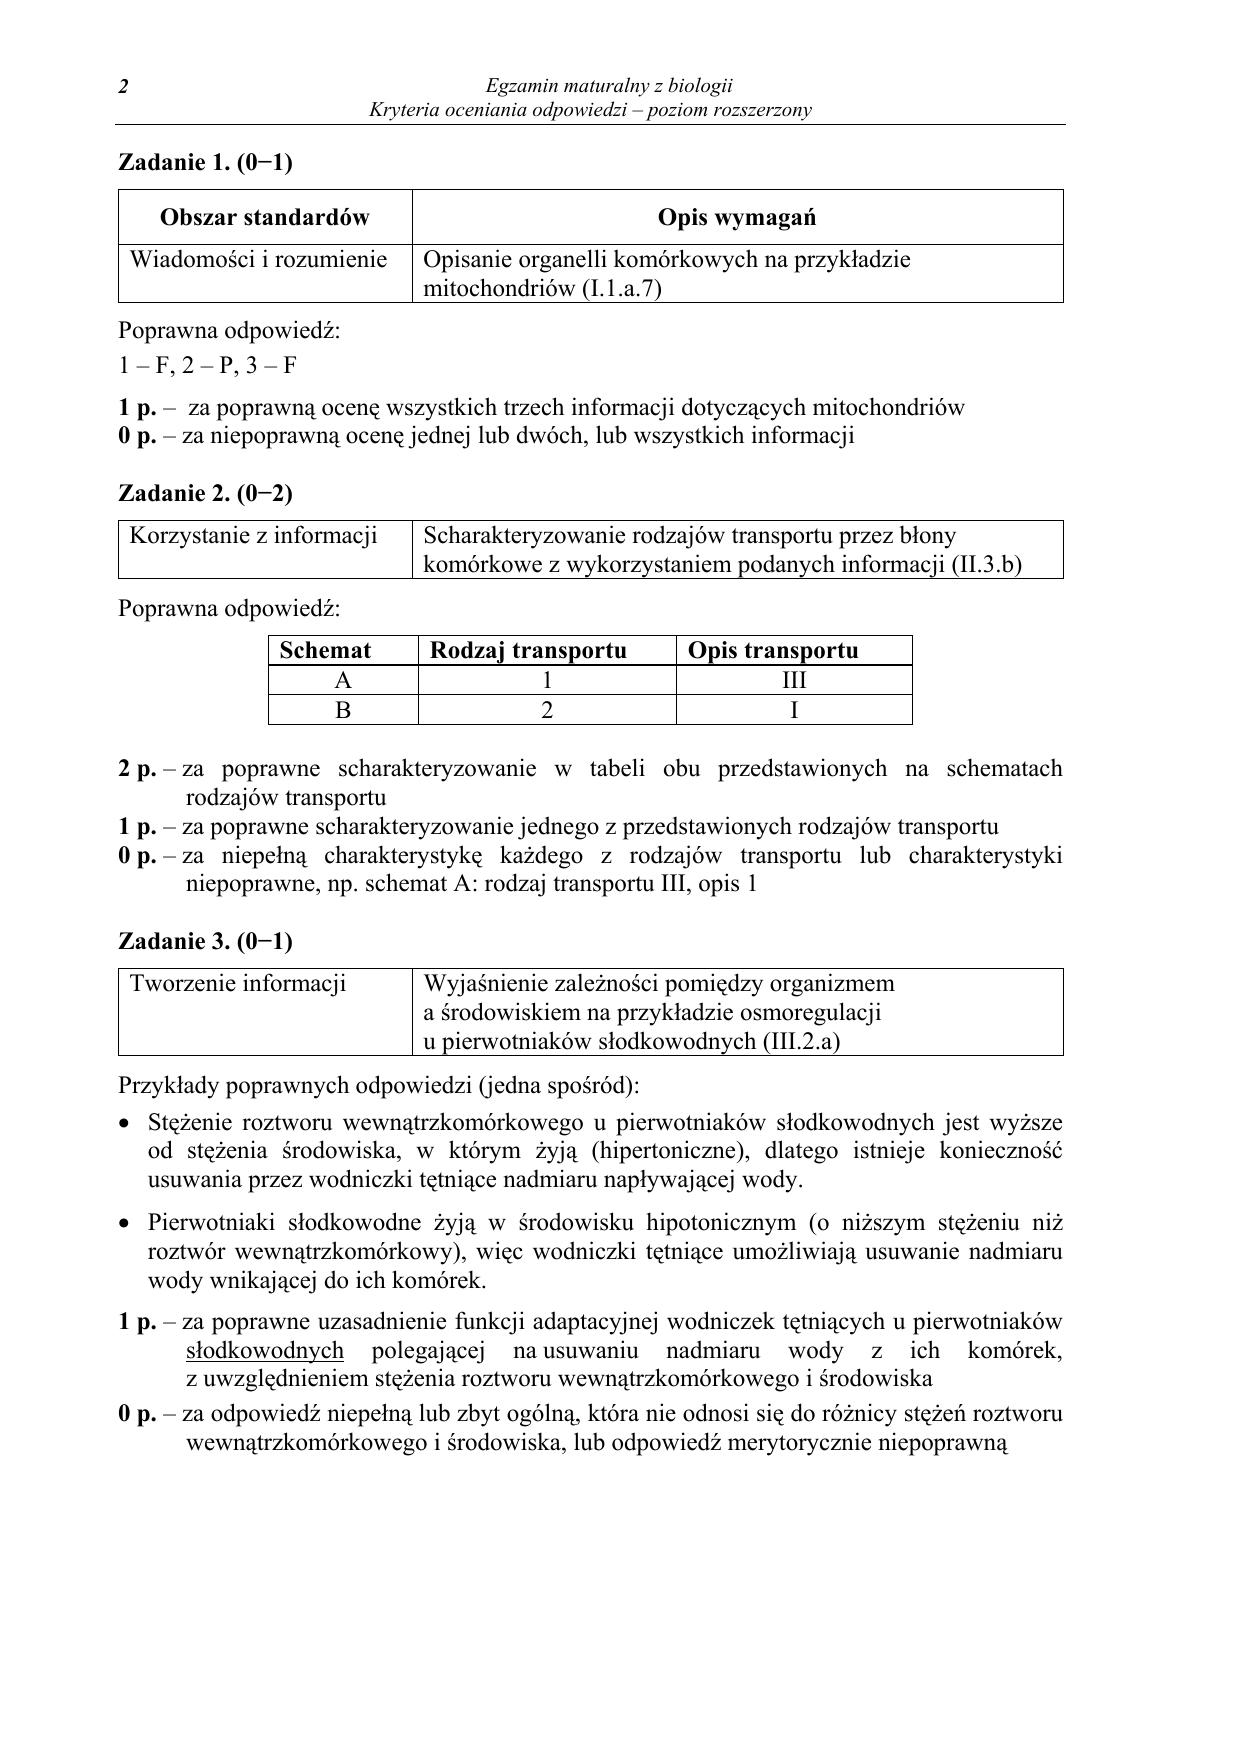 odpowiedzi-biologia-poziom-rozszerzony-matura-2012-02